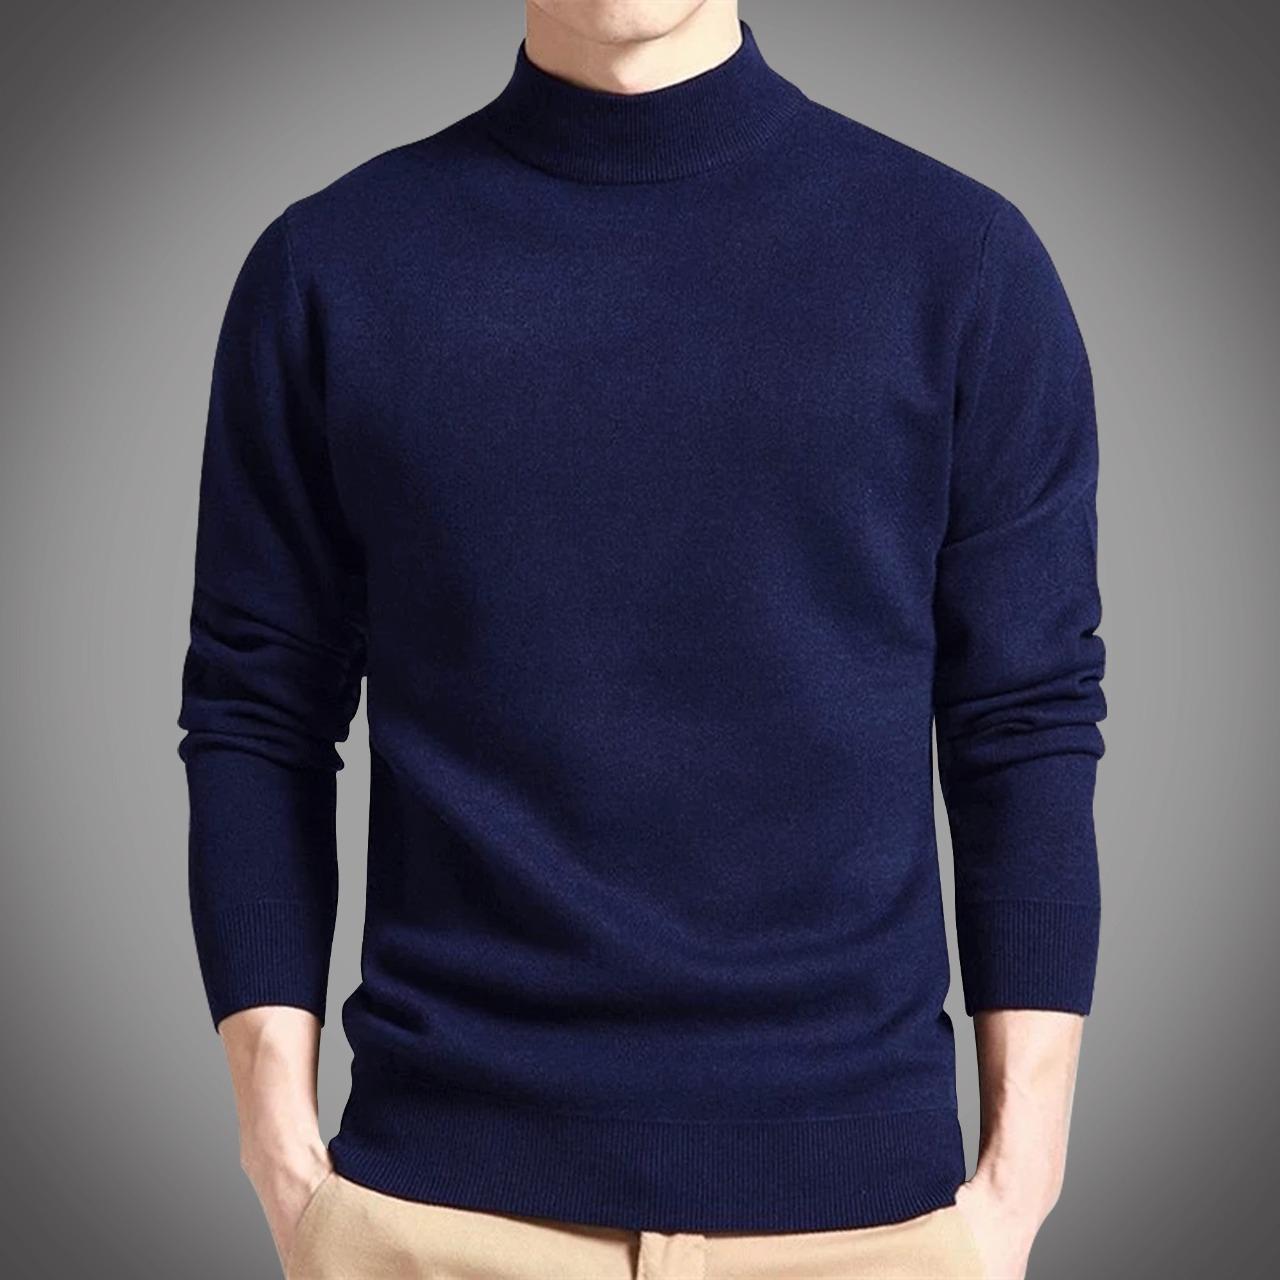 Cotton Full Sleeve Sweater for Men - GMS012